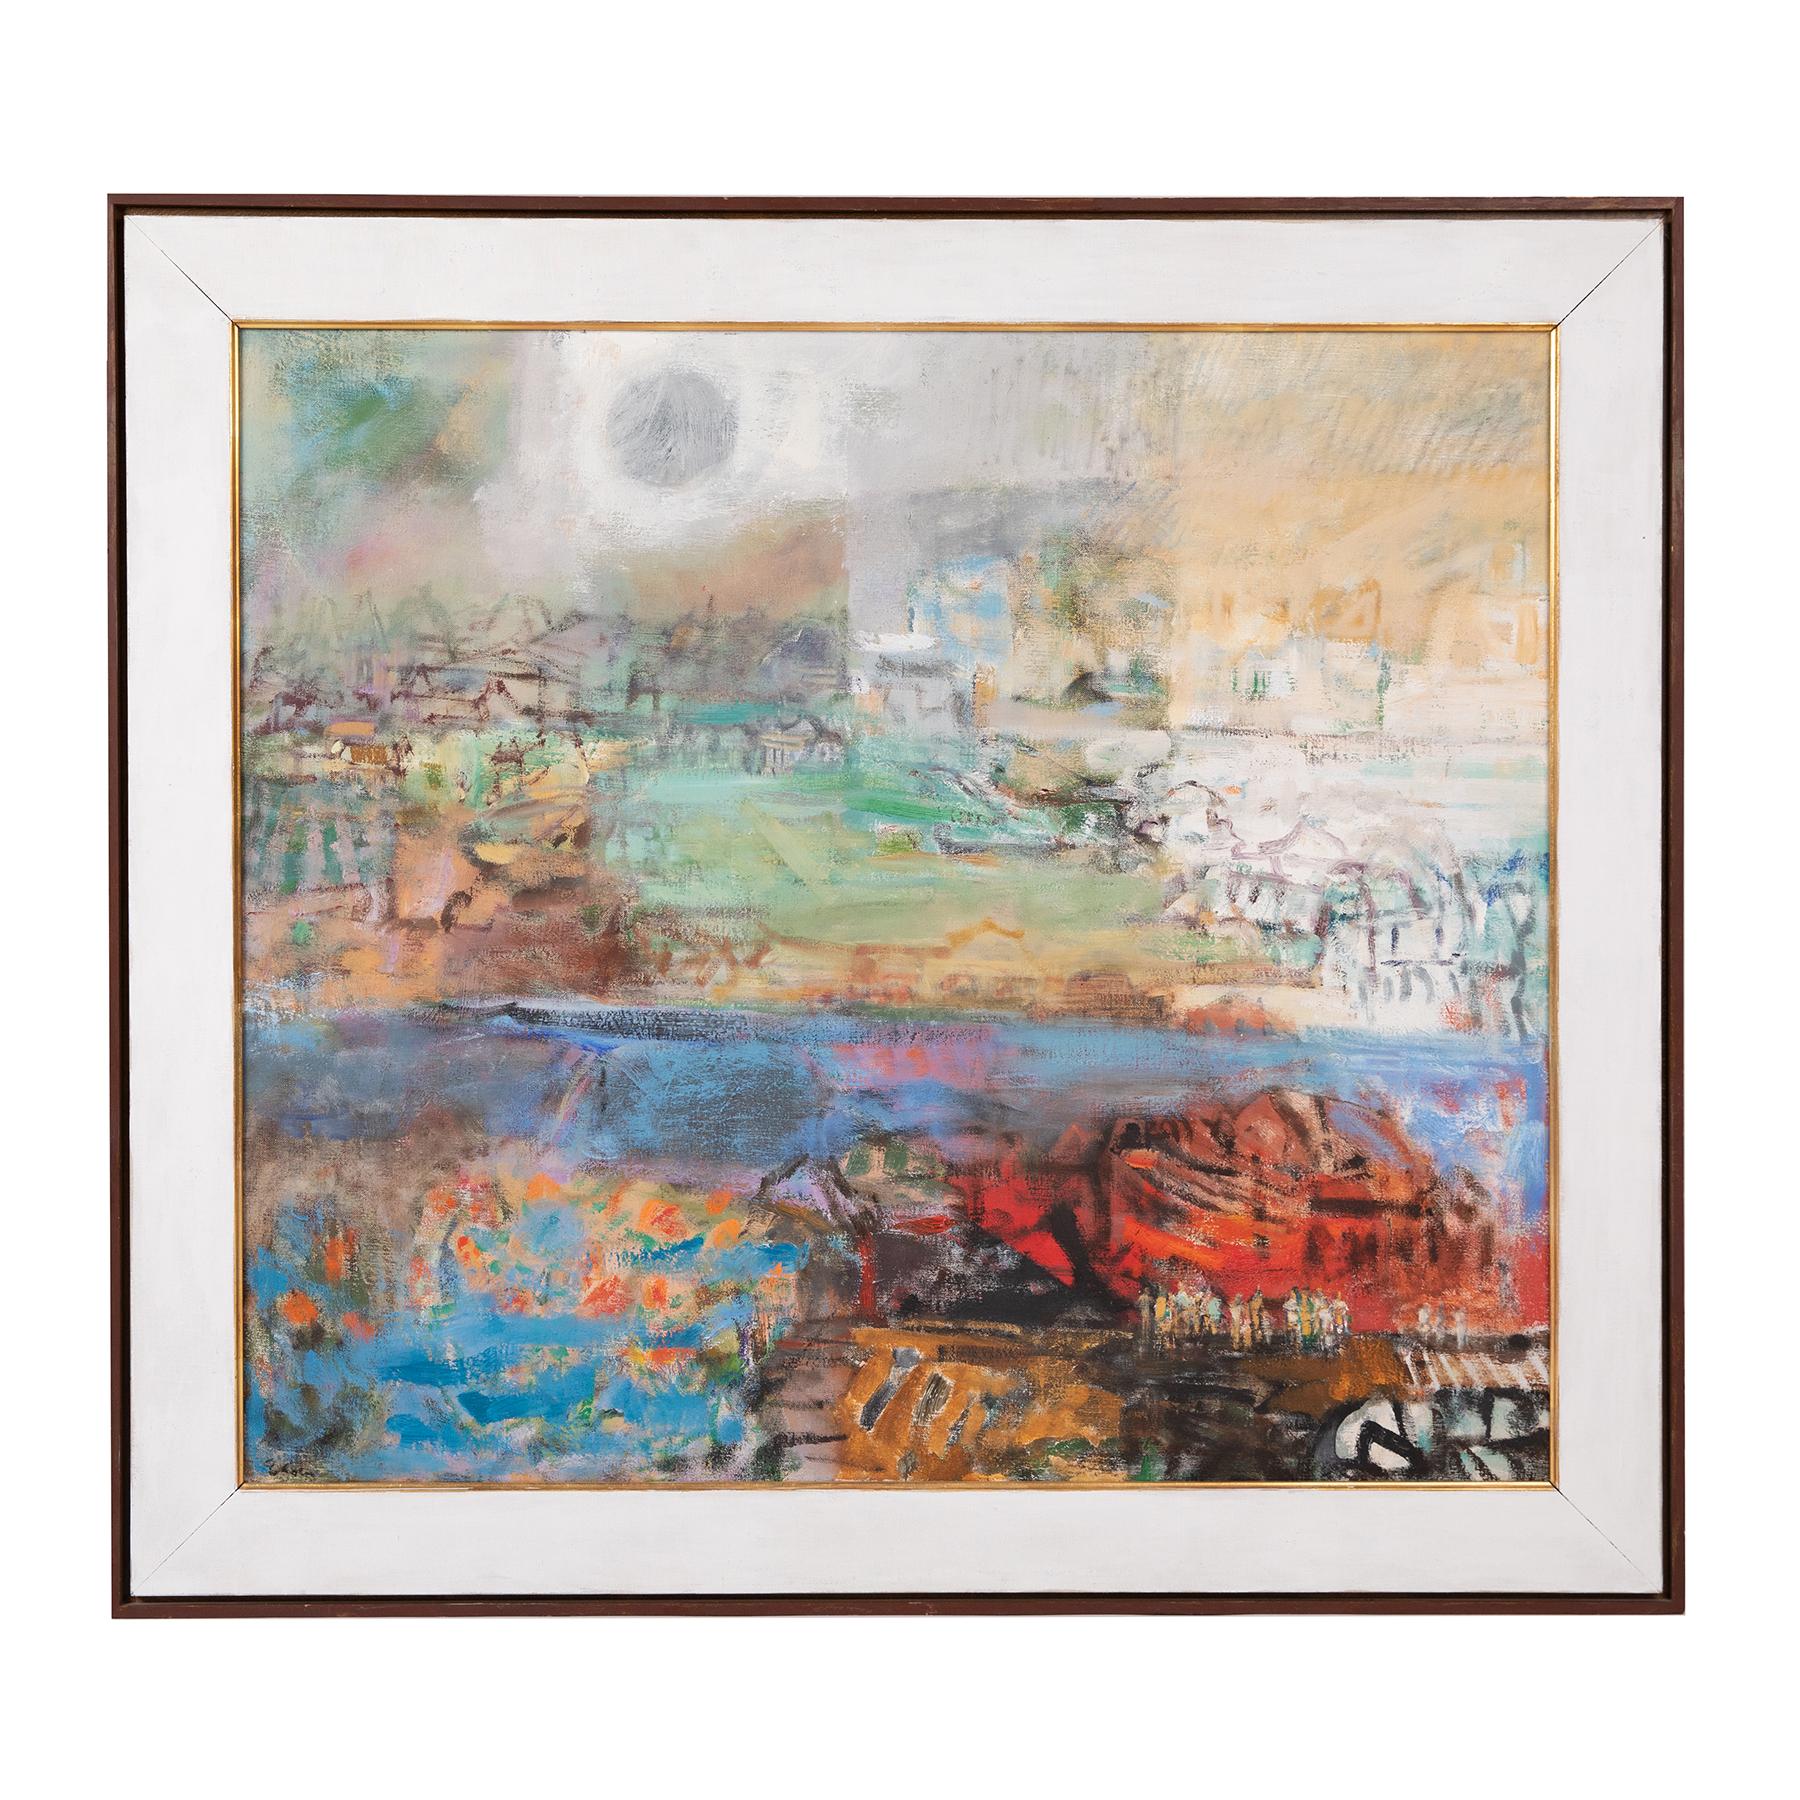 Cette peinture expressionniste multicolore de l'artiste américaine Eleanor Coen dépeint l'impression de superposition d'une ville avec son patchwork de bâtiments et de paysages entrecoupés par une rivière de couleur pervenche. Son travail s'inspire